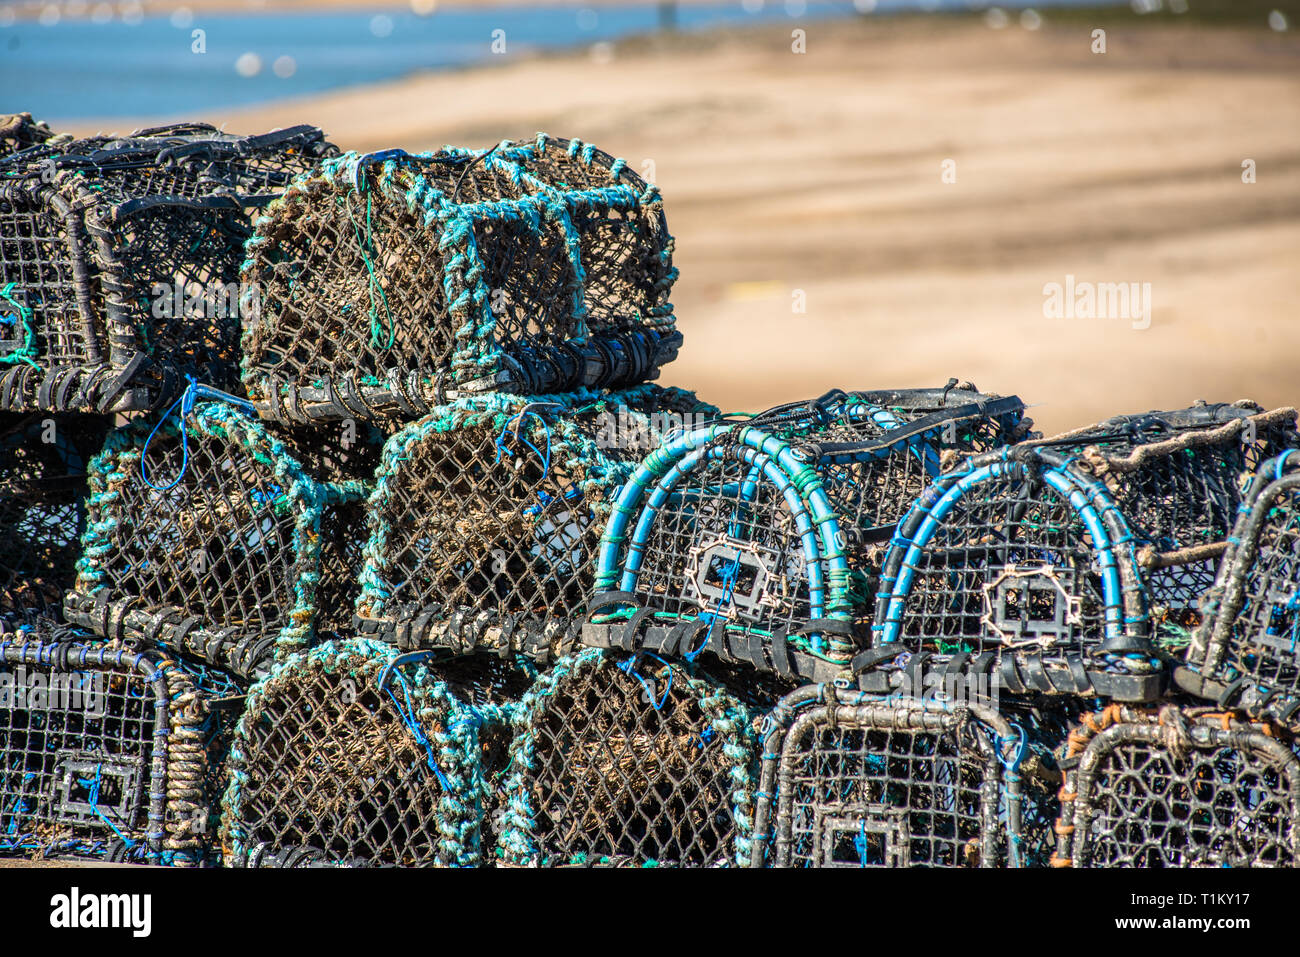 Des casiers à homard et crabe à la nasse ou empilés sur Wells-next-the-Sea front de mer. North Norfolk Coast, East Anglia, Angleterre, Royaume-Uni. Banque D'Images